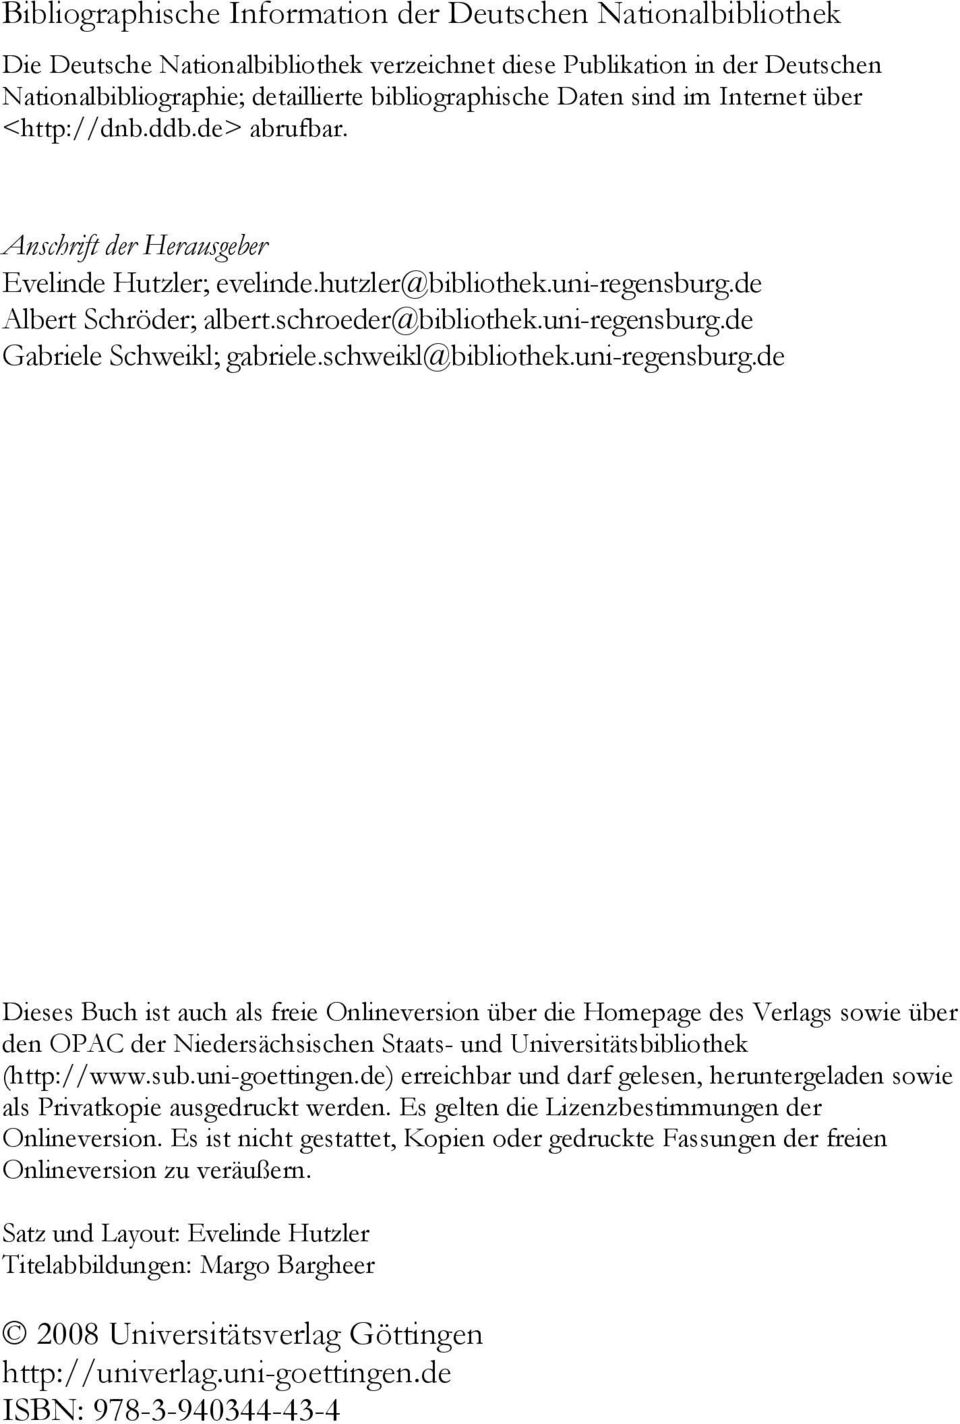 uni-regensburg.de Gabriele Schweikl; gabriele.schweikl@bibliothek.uni-regensburg.de Dieses Buch ist auch als freie Onlineversion über die Homepage des Verlags sowie über den OPAC der Niedersächsischen Staats- und Universitätsbibliothek (http://www.